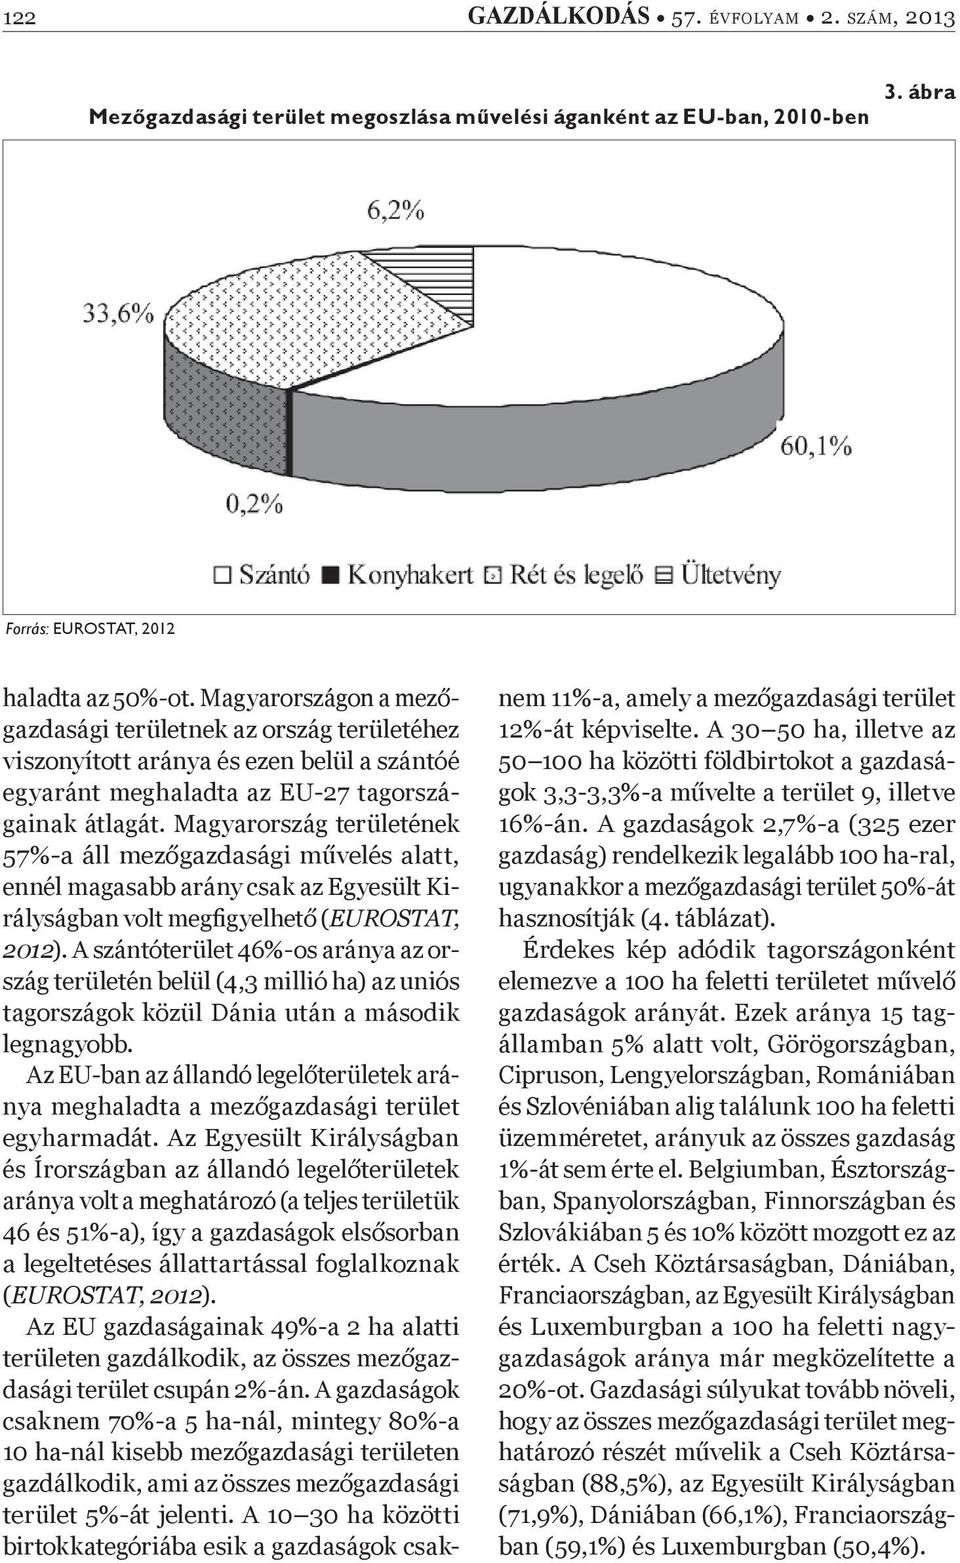 Magyarország területének 57%-a áll mez gazdasági m velés alatt, ennél magasabb arány csak az Egyesült Királyságban volt megþ gyelhet (EUROSTAT, 2012).